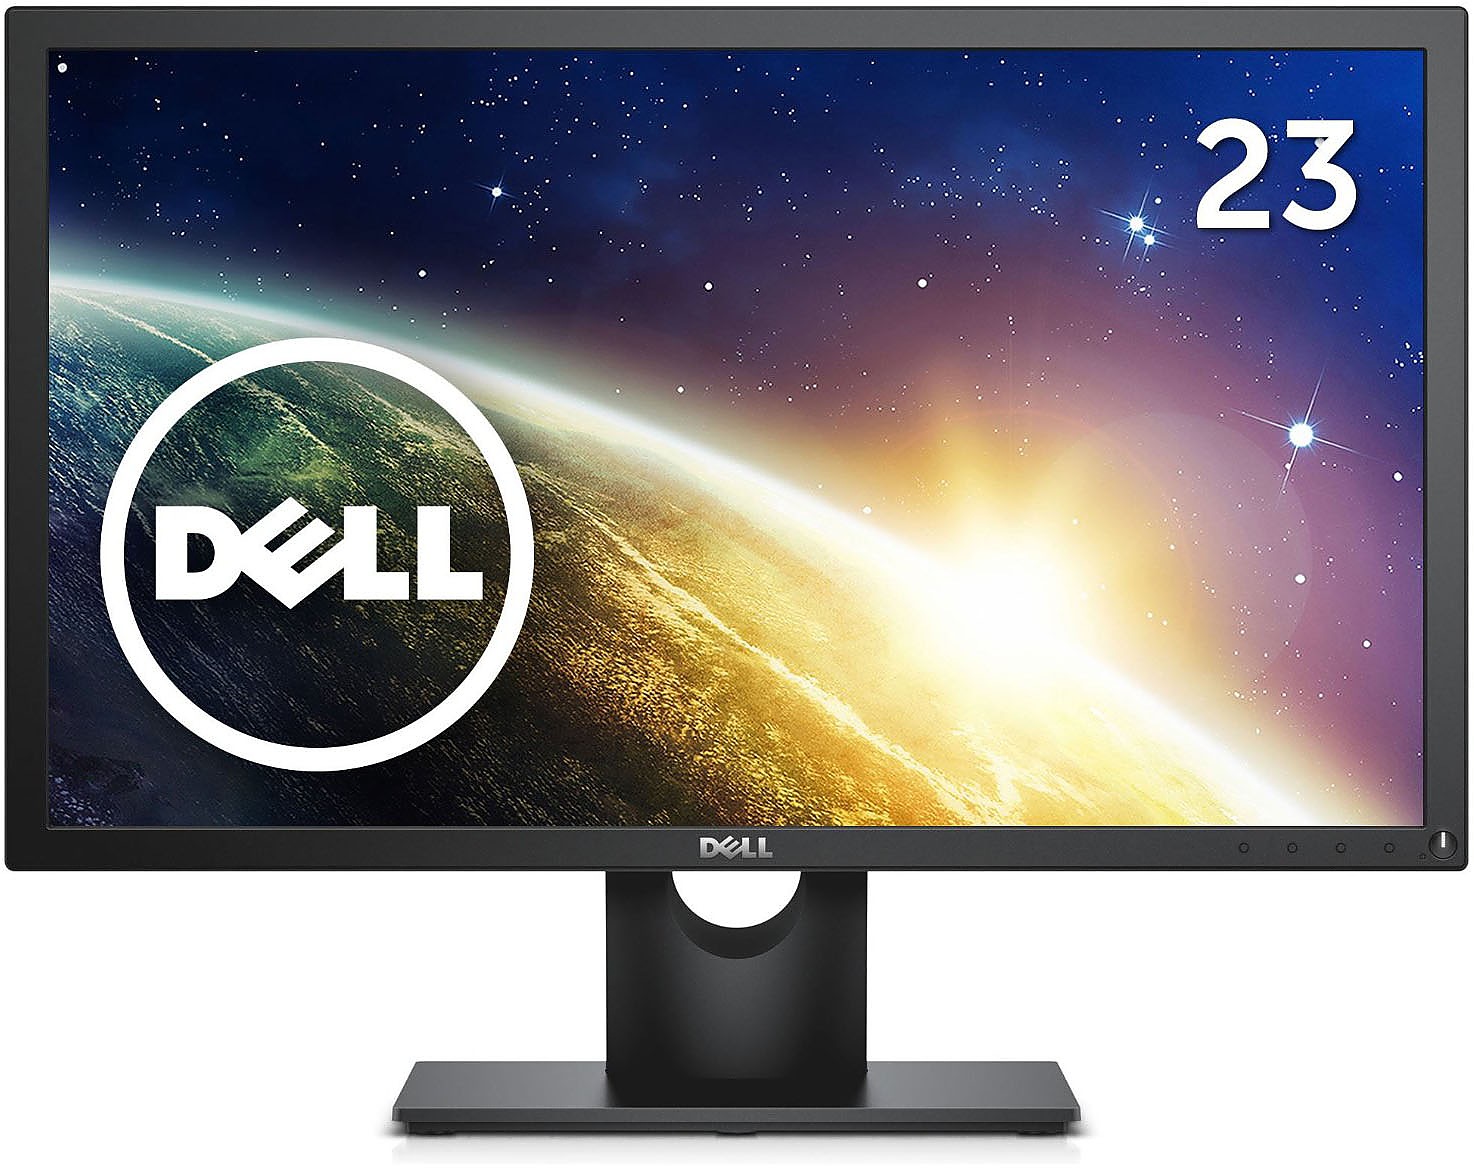 [HCM]Màn hình LCD Dell E2318H . Kích thước 23 inches. Full Box nguyên hộp . Mới 100%. Vi Tính Quốc Duy.